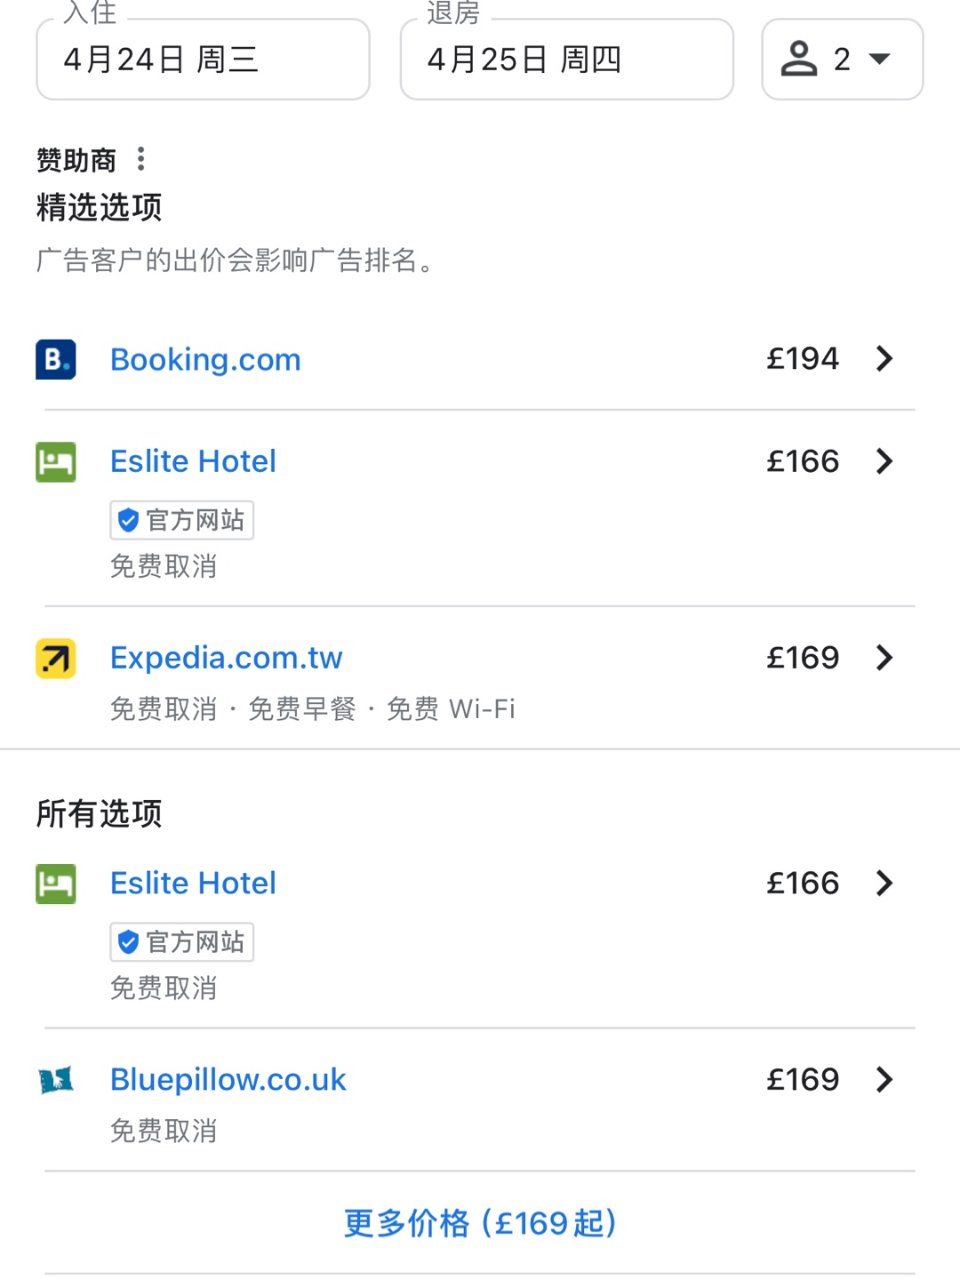 还有人不知道订酒店先用谷歌地图比价神器吗...